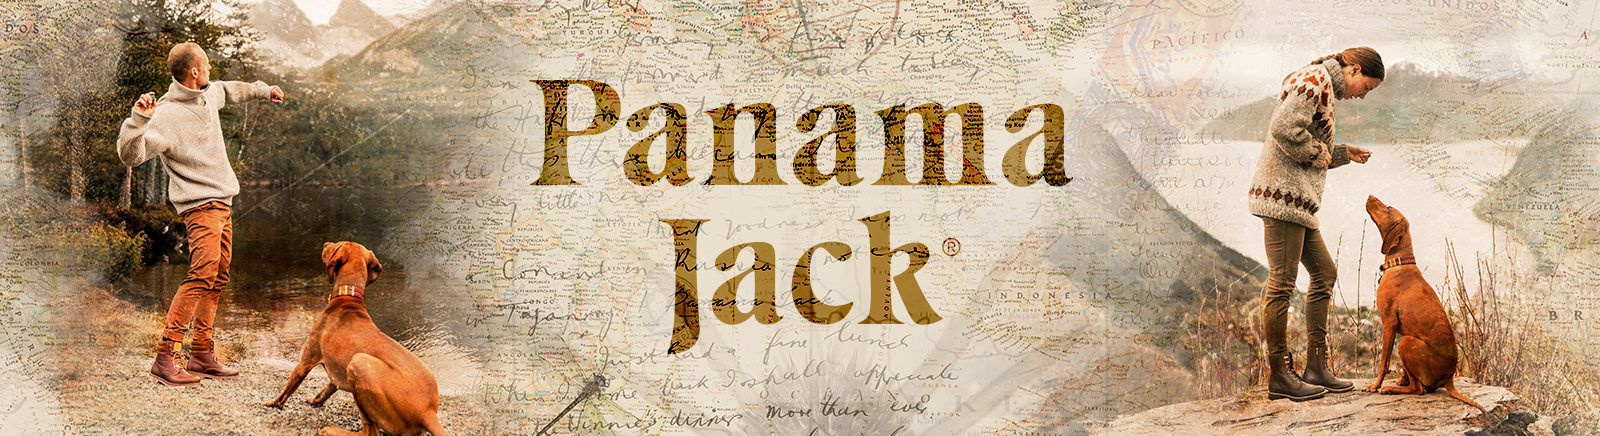 Juppen: Panama Jack Schnürboots für Damen online shoppen